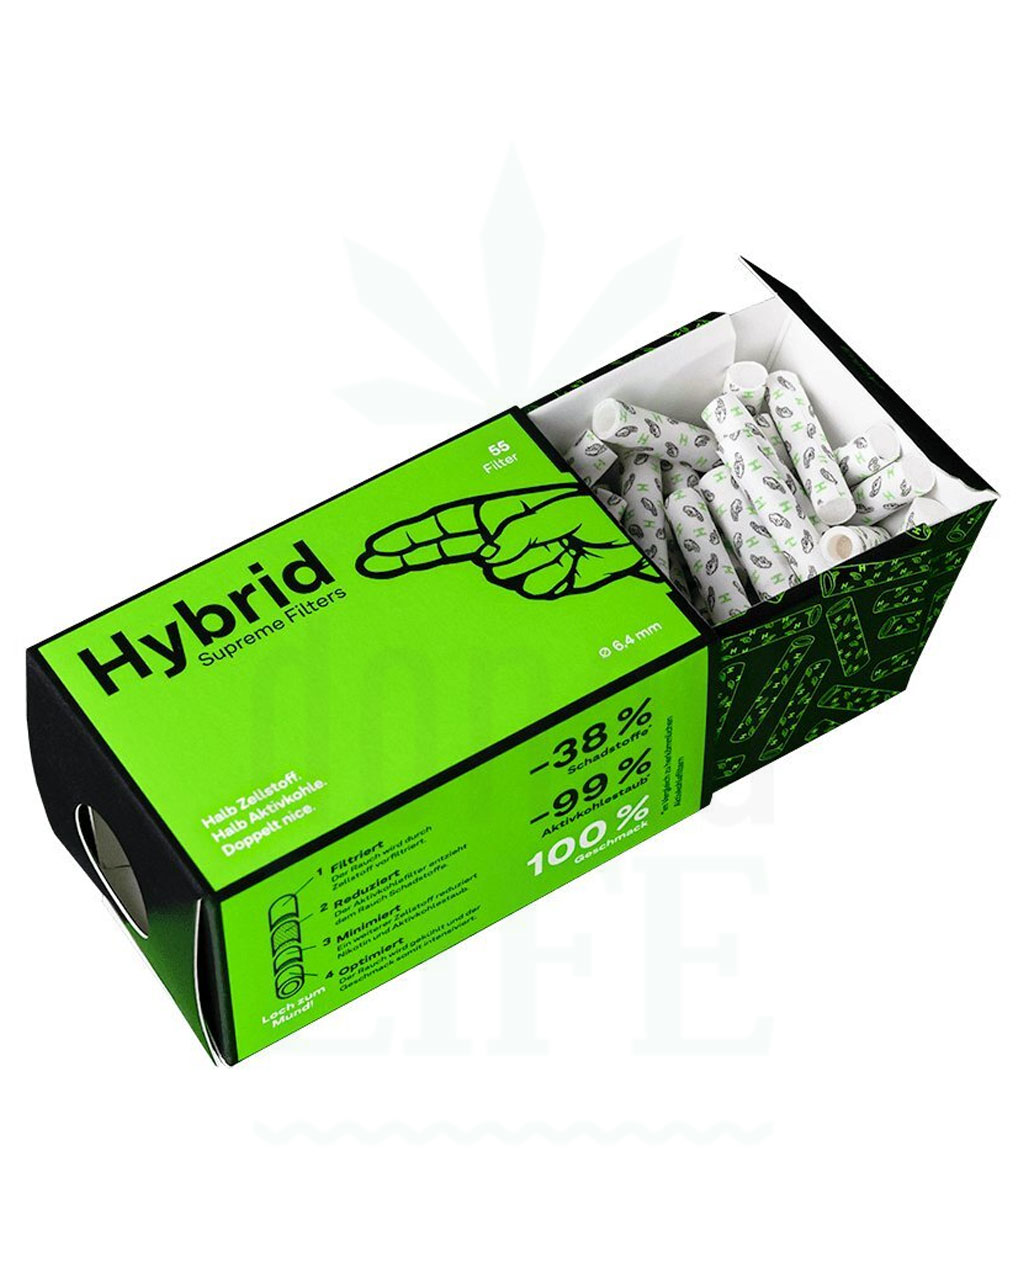 Headshop HYBRID Supreme Filters Aktivkohle Filter + Zellstoff  | 6,4 mm